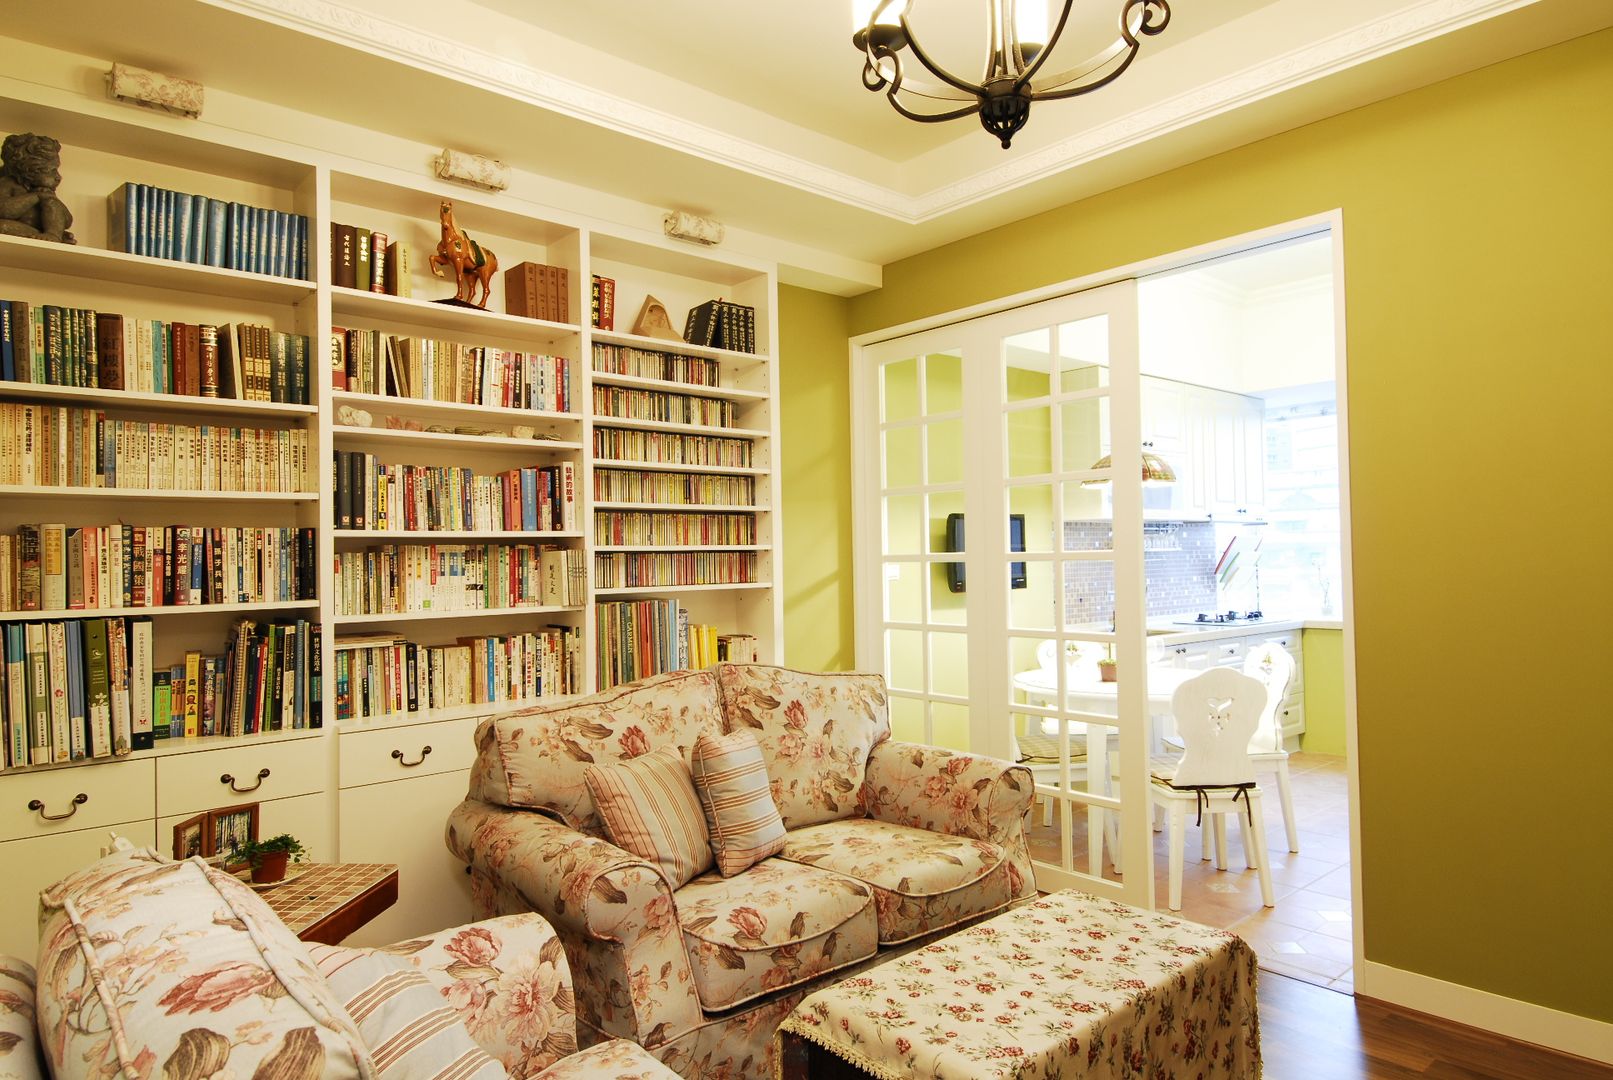 客廳連接開放式廚房 浩司室內裝修設計有限公司 HOUSE INTERIOR DESIGN Country style living room